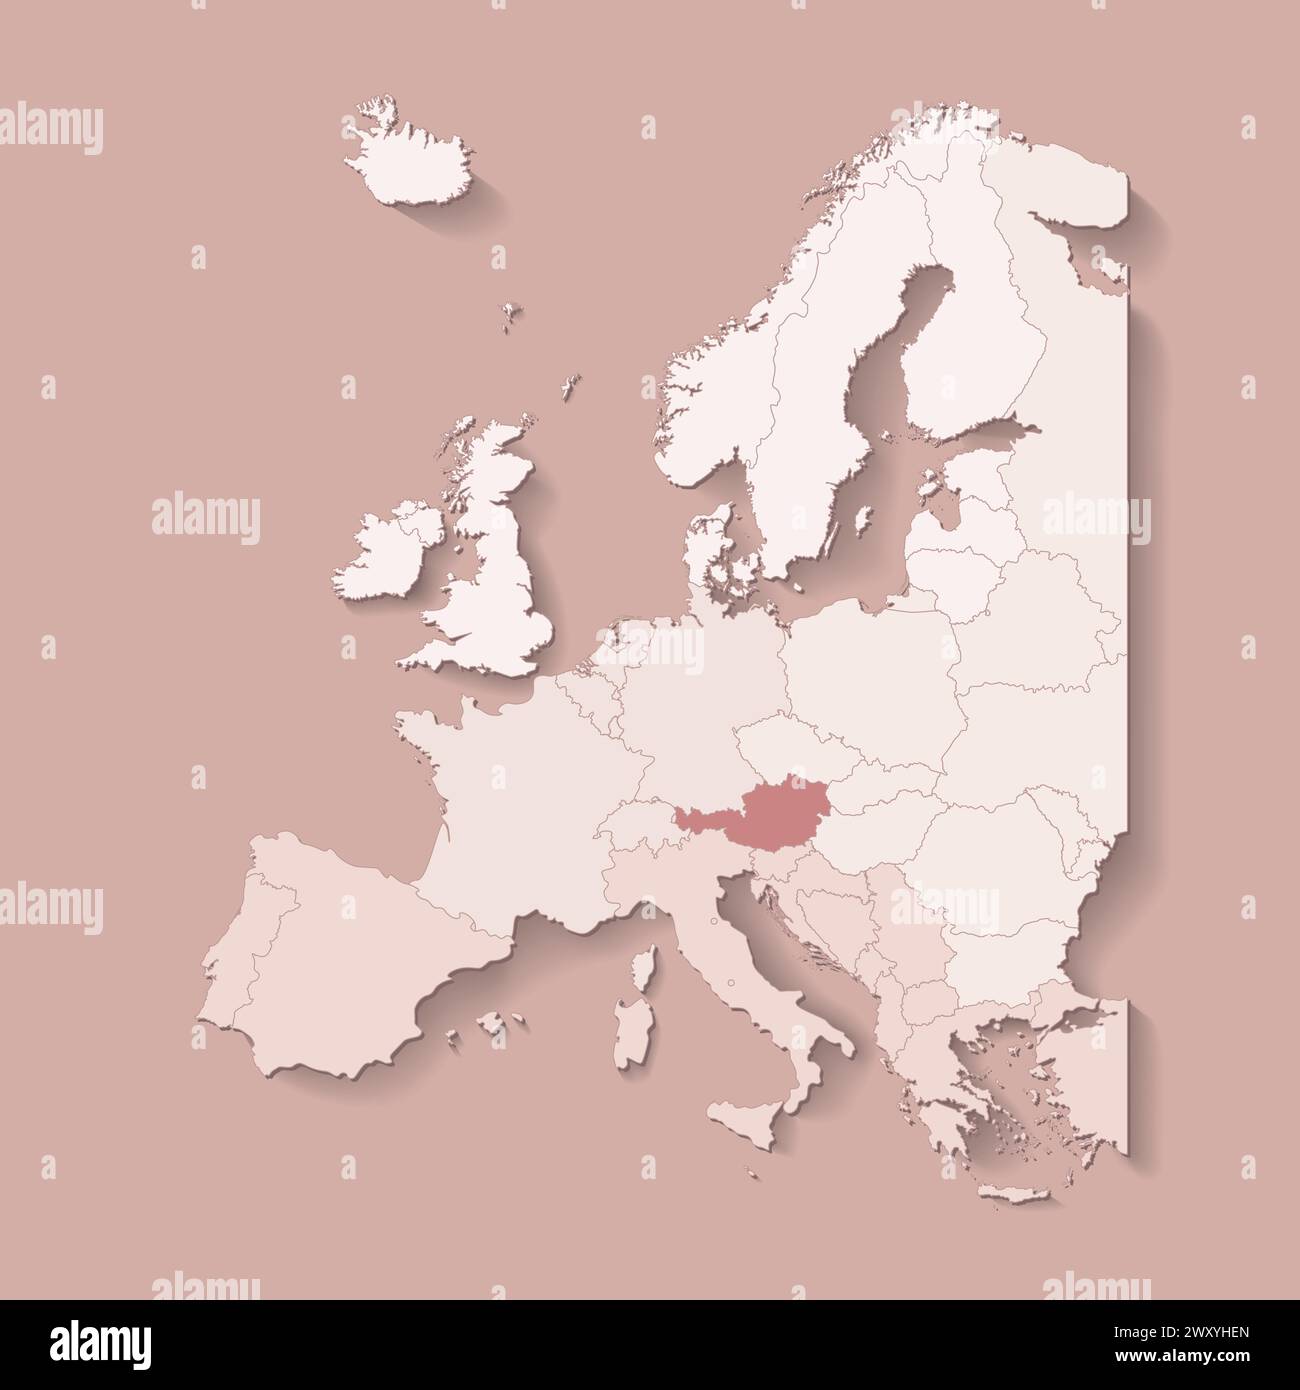 Illustrazione vettoriale con terra europea con confini di stati e paese contrassegnato Austria. Mappa politica di colore marrone con occidentale, sud e così via Illustrazione Vettoriale